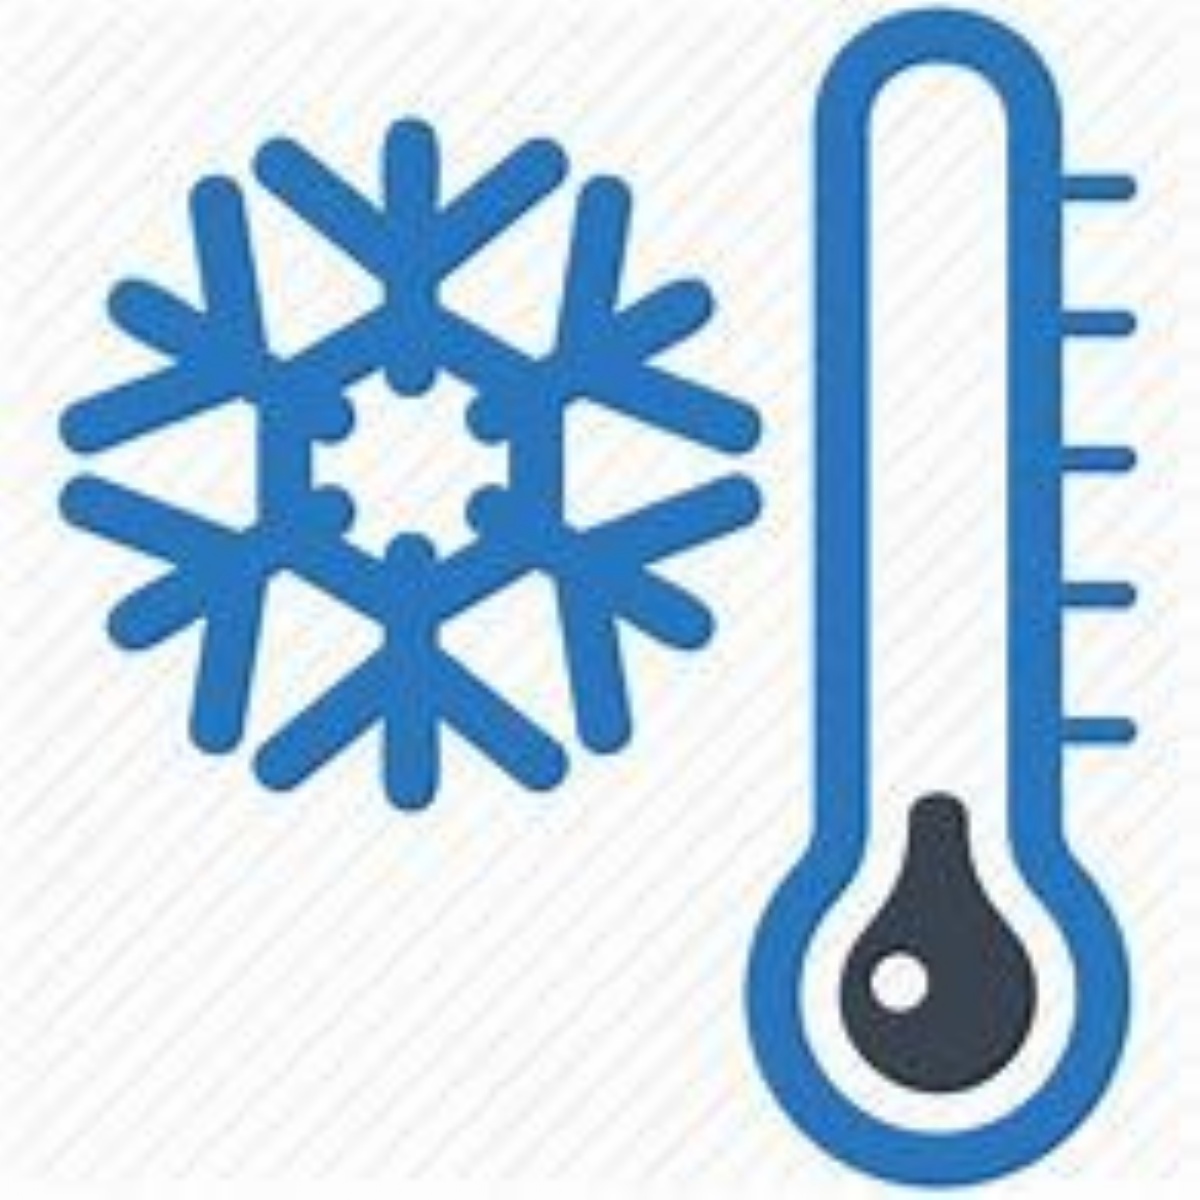 В Курганской области аномально холодная погода, с минимальной температурой воздуха в ночные часы -40, -42 °C..